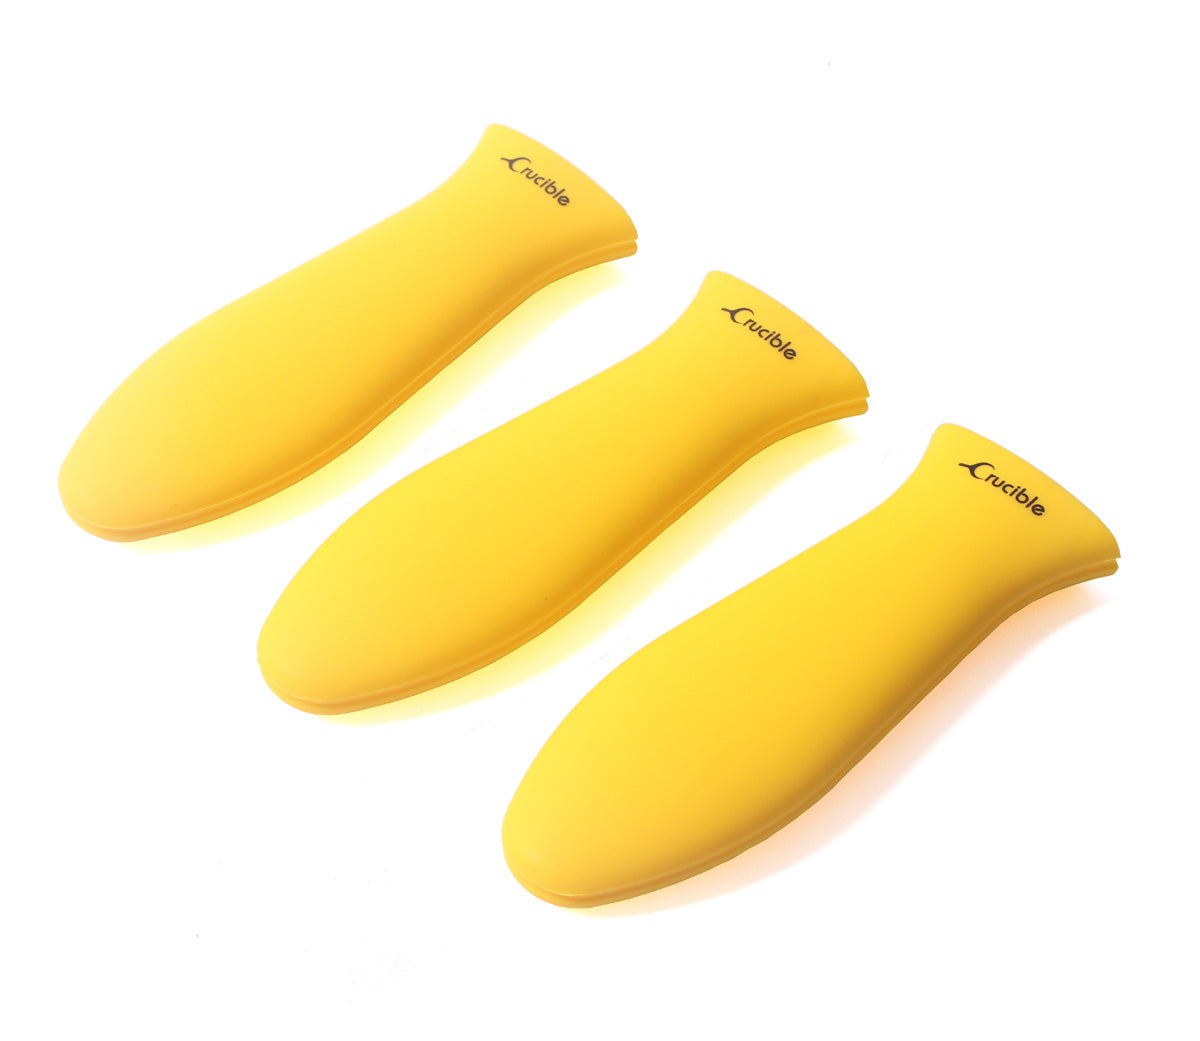 Topflappen aus Silikon (Gelb, groß) für Gusseisenpfannen